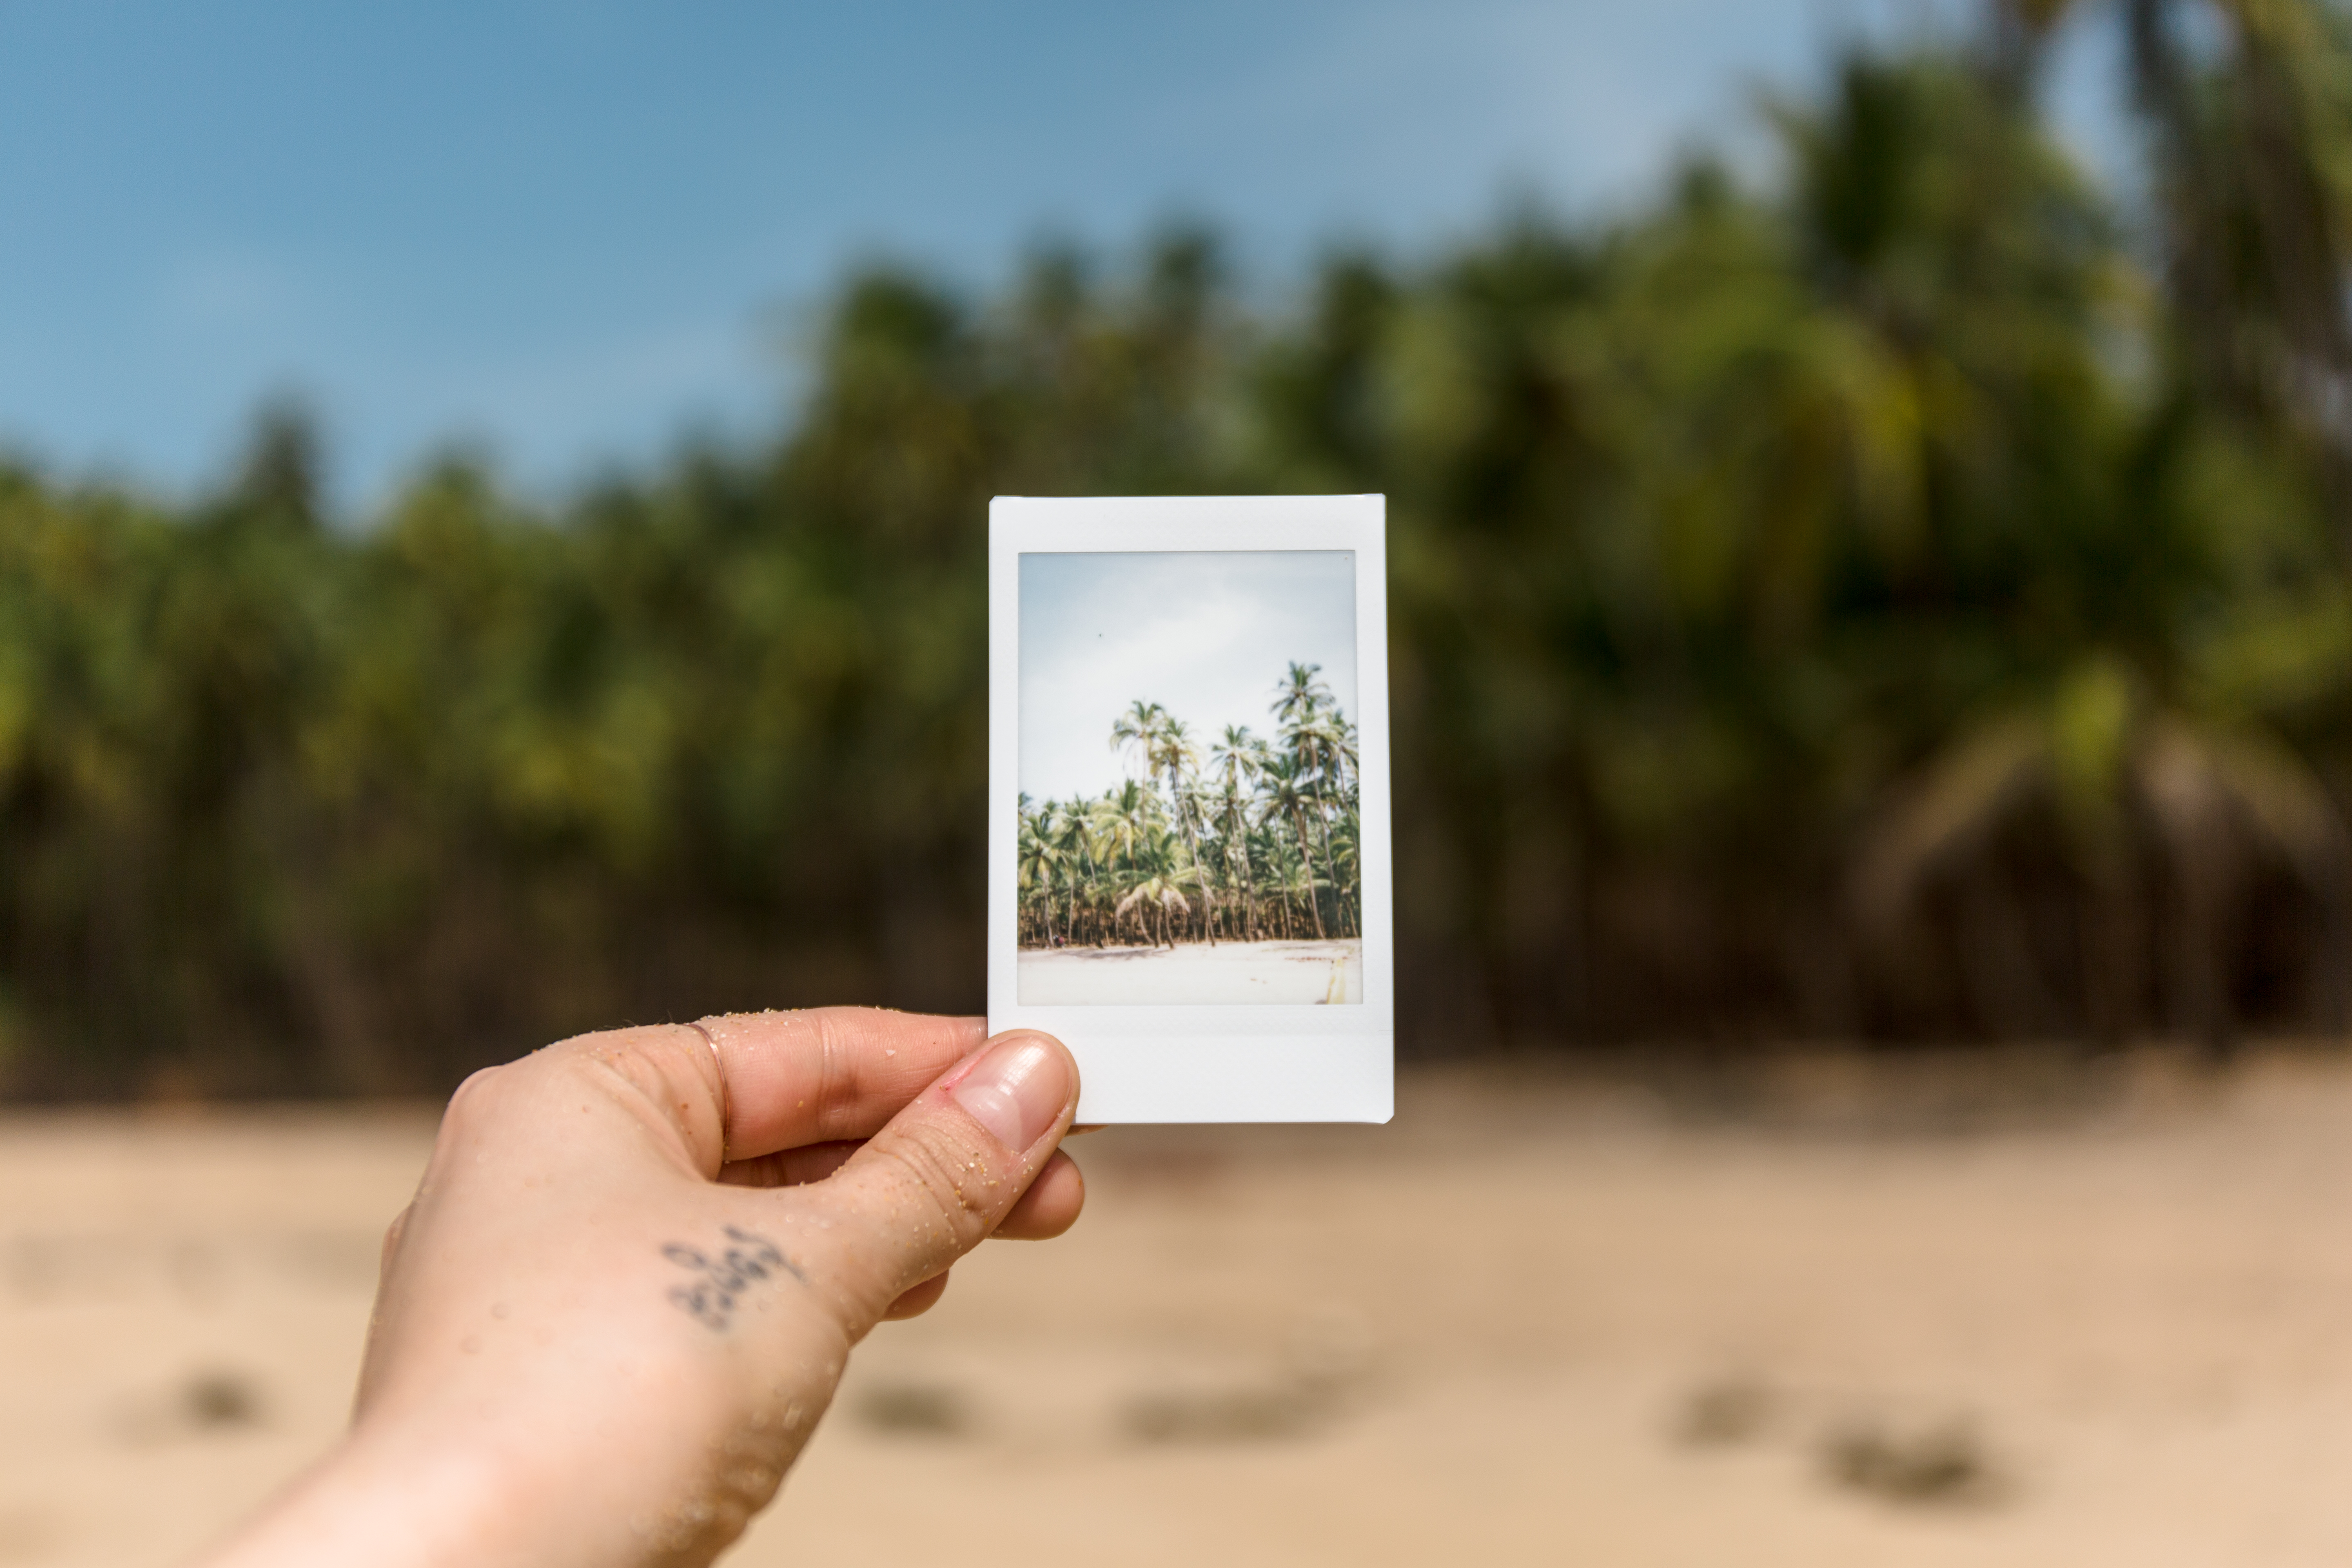 Снимки с Polaroid перевести в электронный вид без рамок